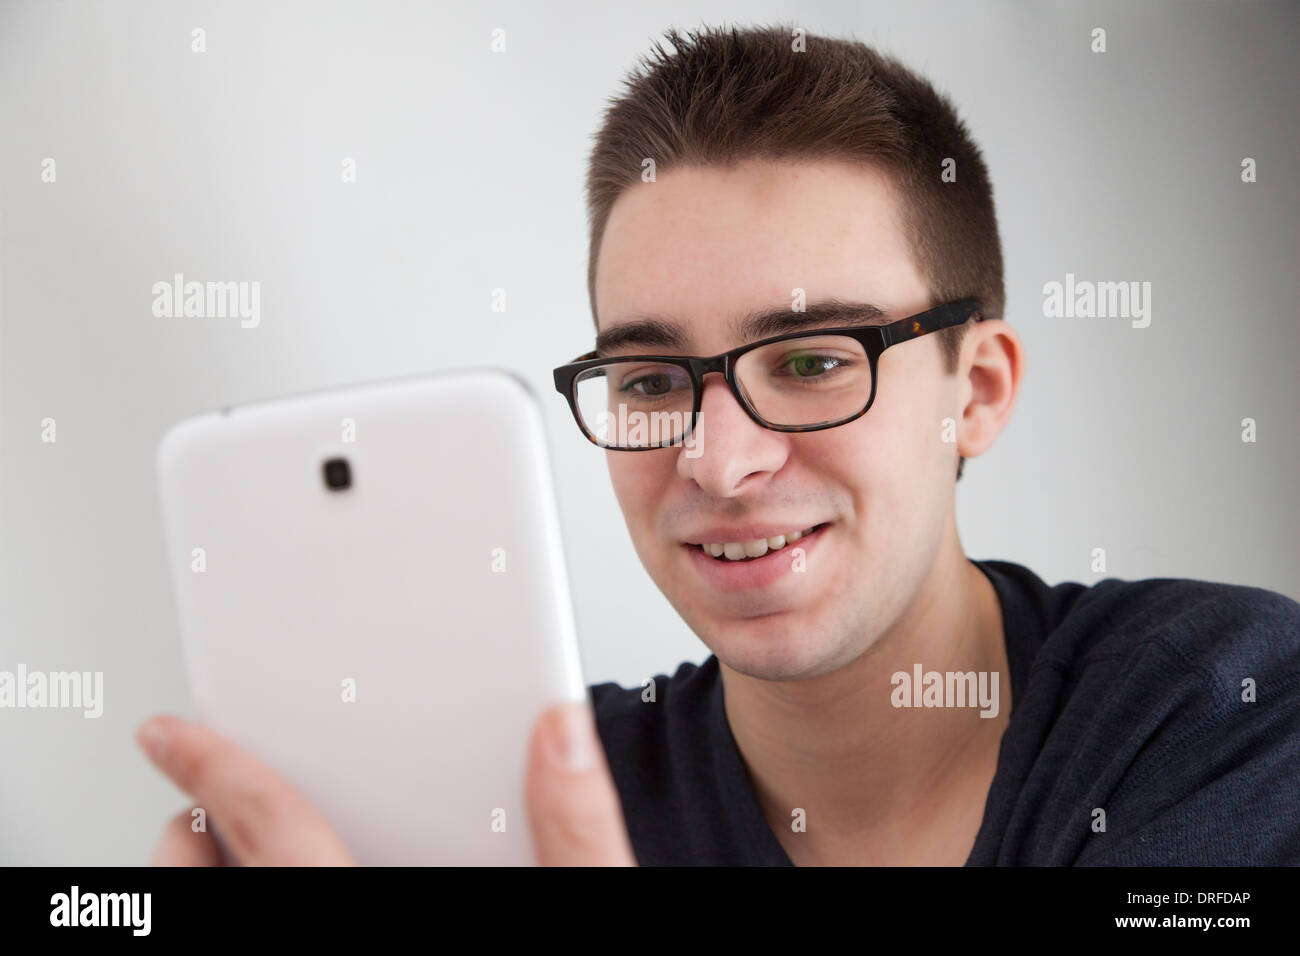 Gut aussehender junger Mann mit Brille, halten Sie eine weiße digitale Tablette lächelnd. Stockfoto